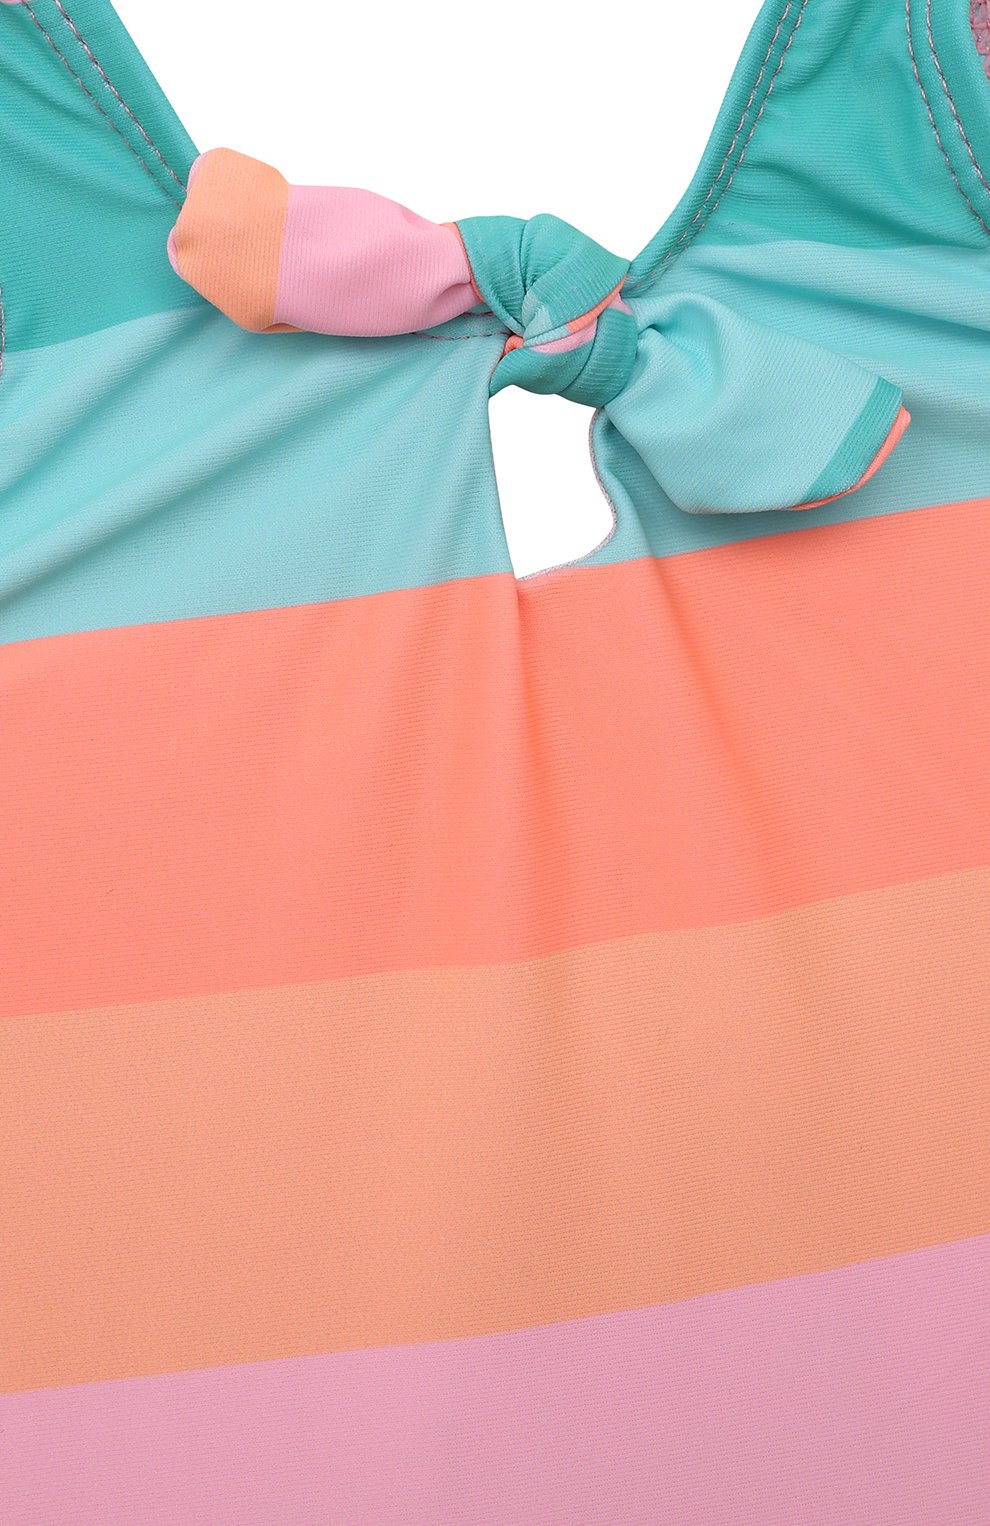 Детского слитный купальник SNAPPER ROCK разноцветного цвета, арт. G13224 | Фото 3 (Кросс-КТ НВ: Купальники)